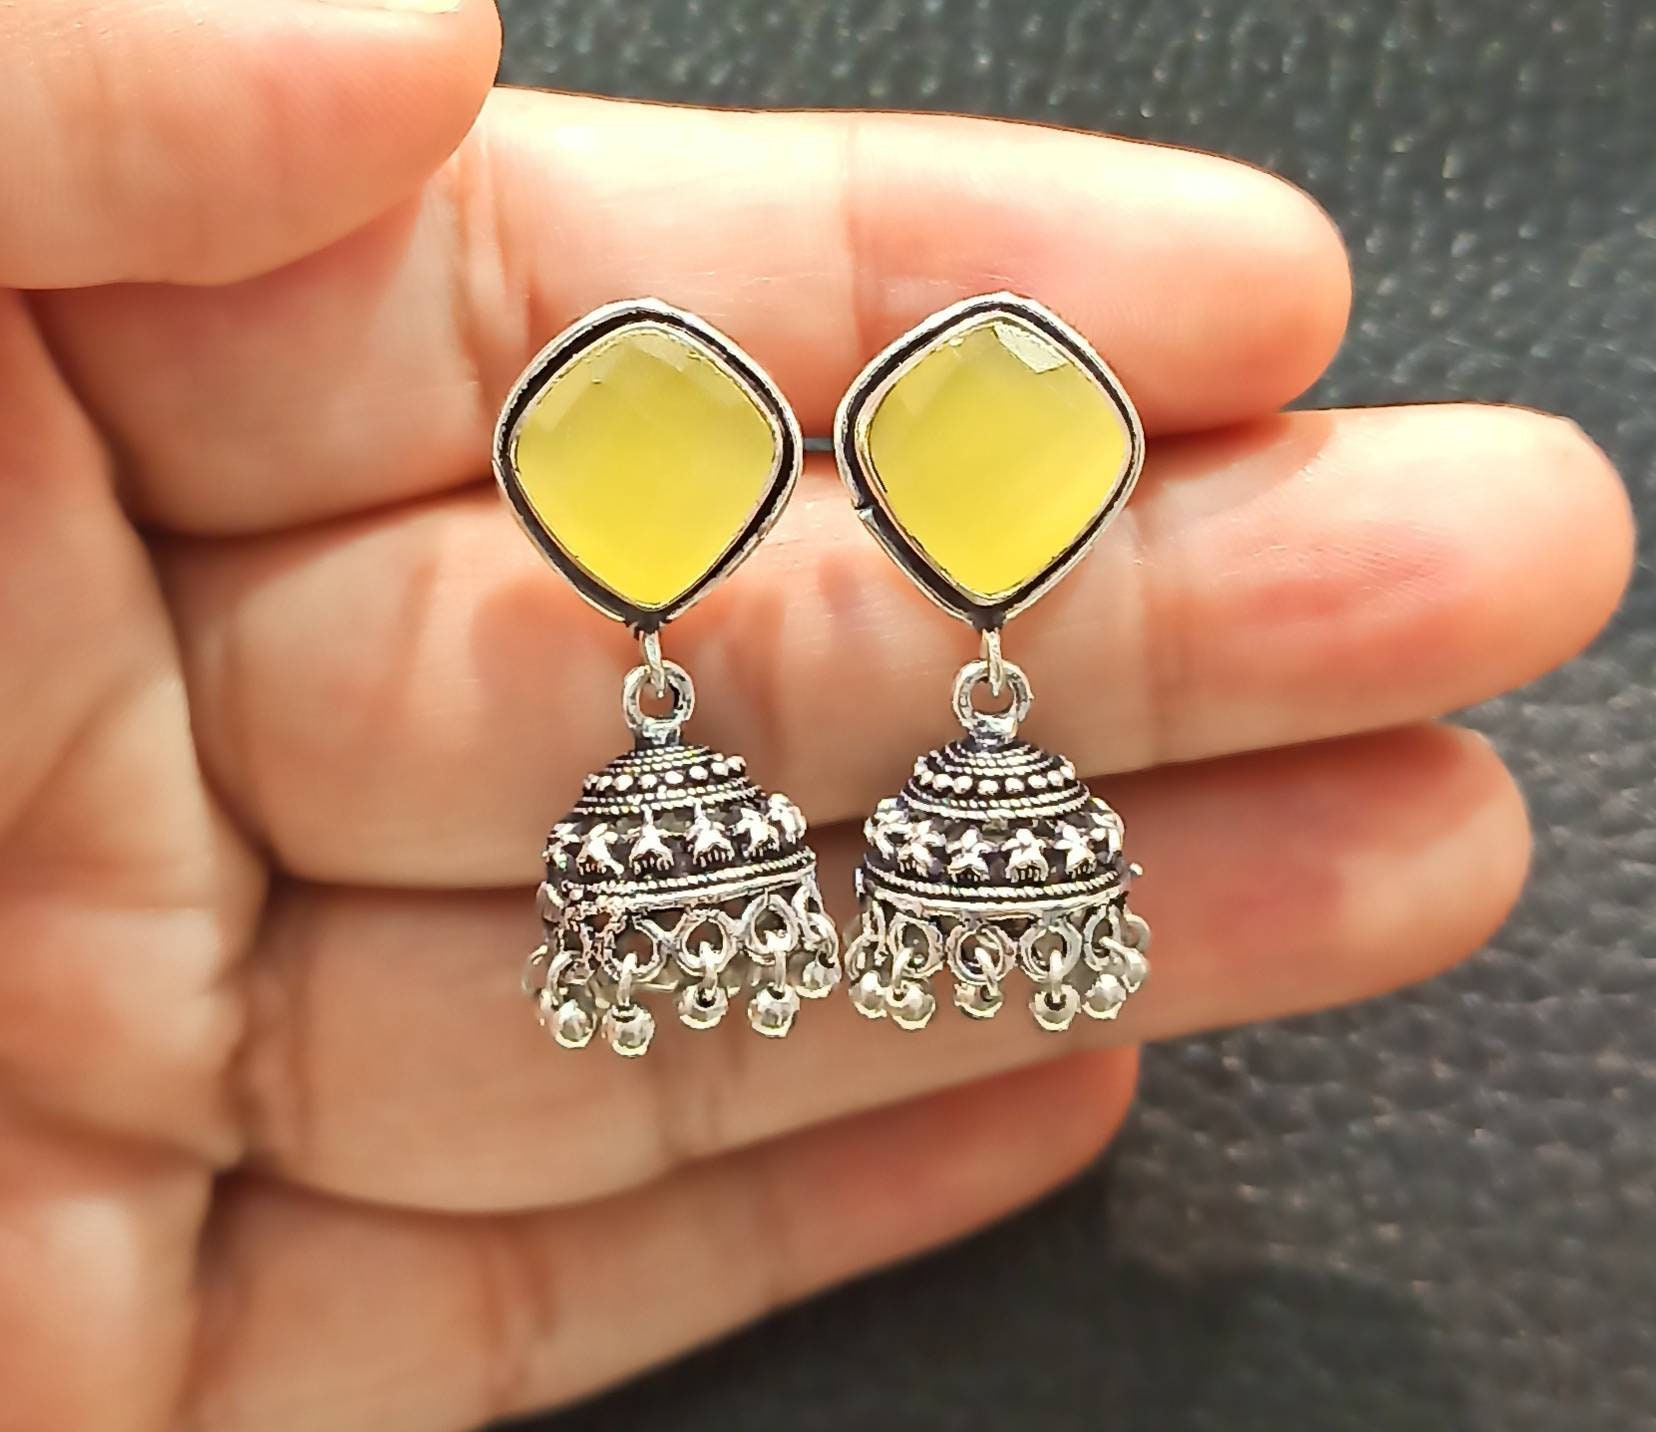 Buy Yellow Jade Earrings, Yellow Beaded With Gold Post Earrings, Yellow  Color Stud Earrings,statement Earrings,yellow Earrings Stud Online in India  - Etsy